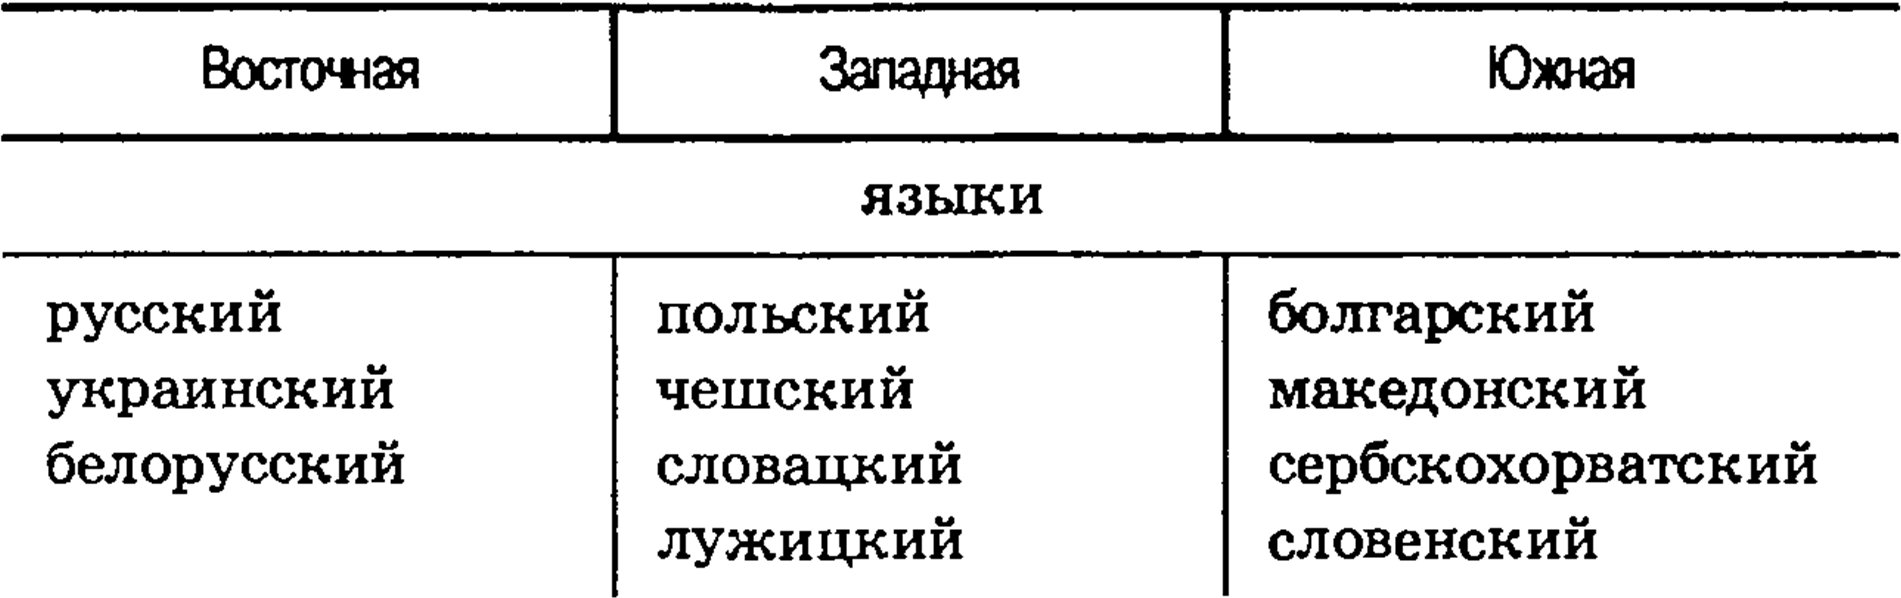 Группа славянских языков